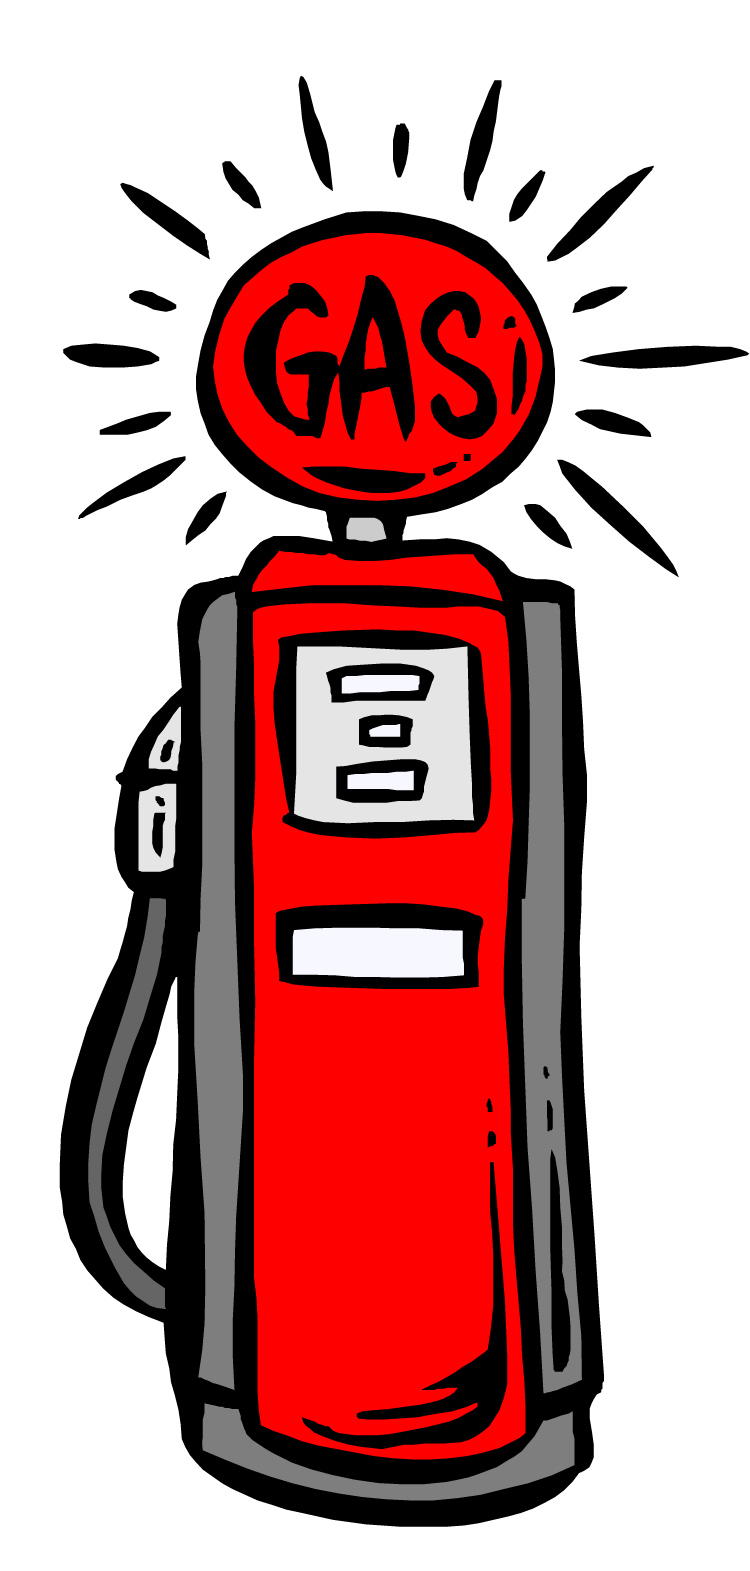 Gas Pump - Red Gas Pump